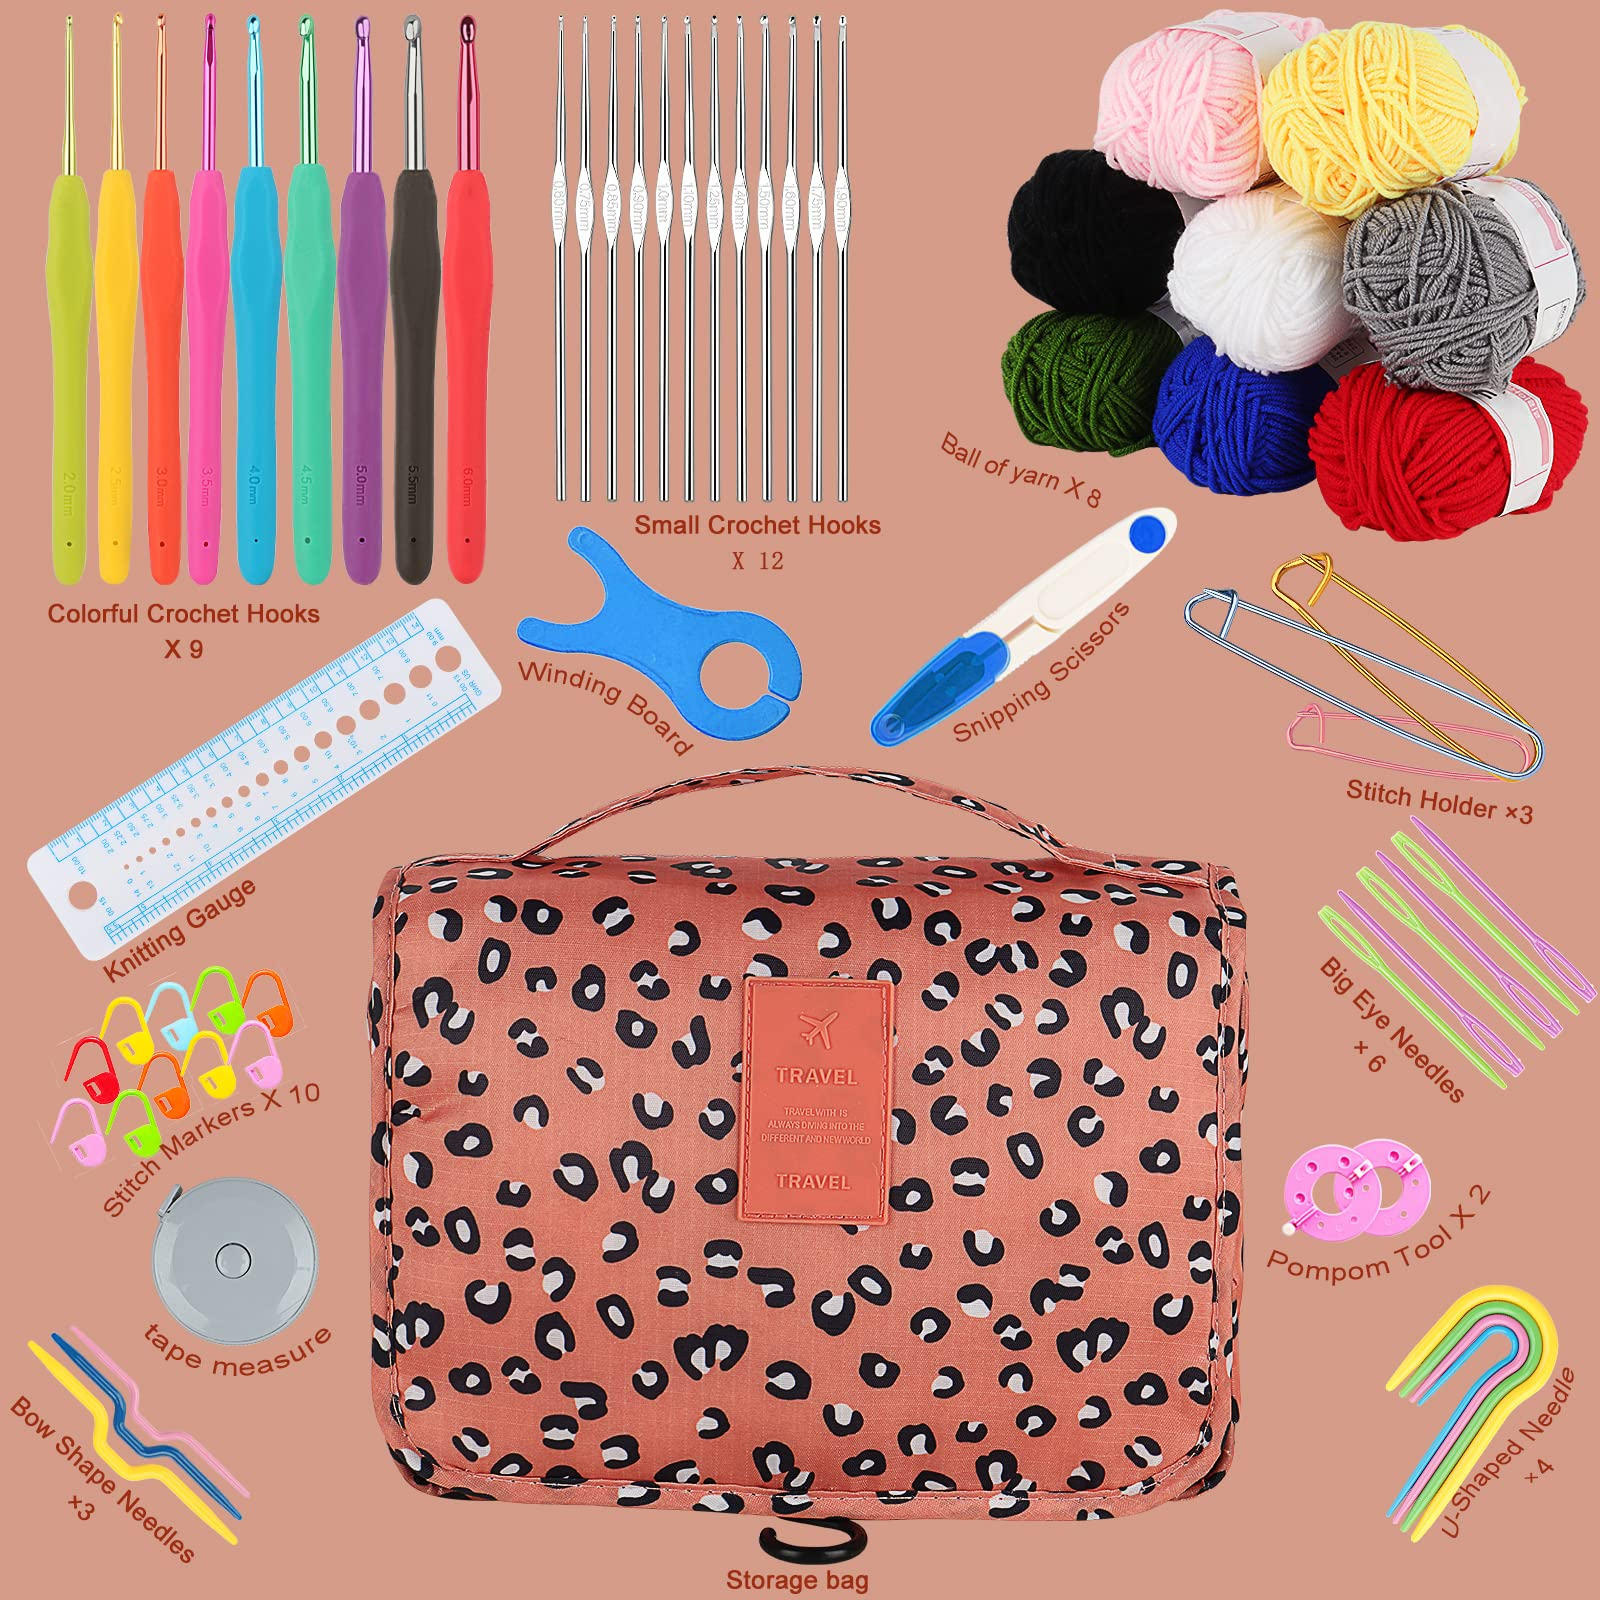 Coopay Crochet Kits for Kids Beginner Adults, 62pcs Travel Crochet Starter  Kit Crochet Set with Crochet Hooks, Yarn Balls, Crochet Book, Portable